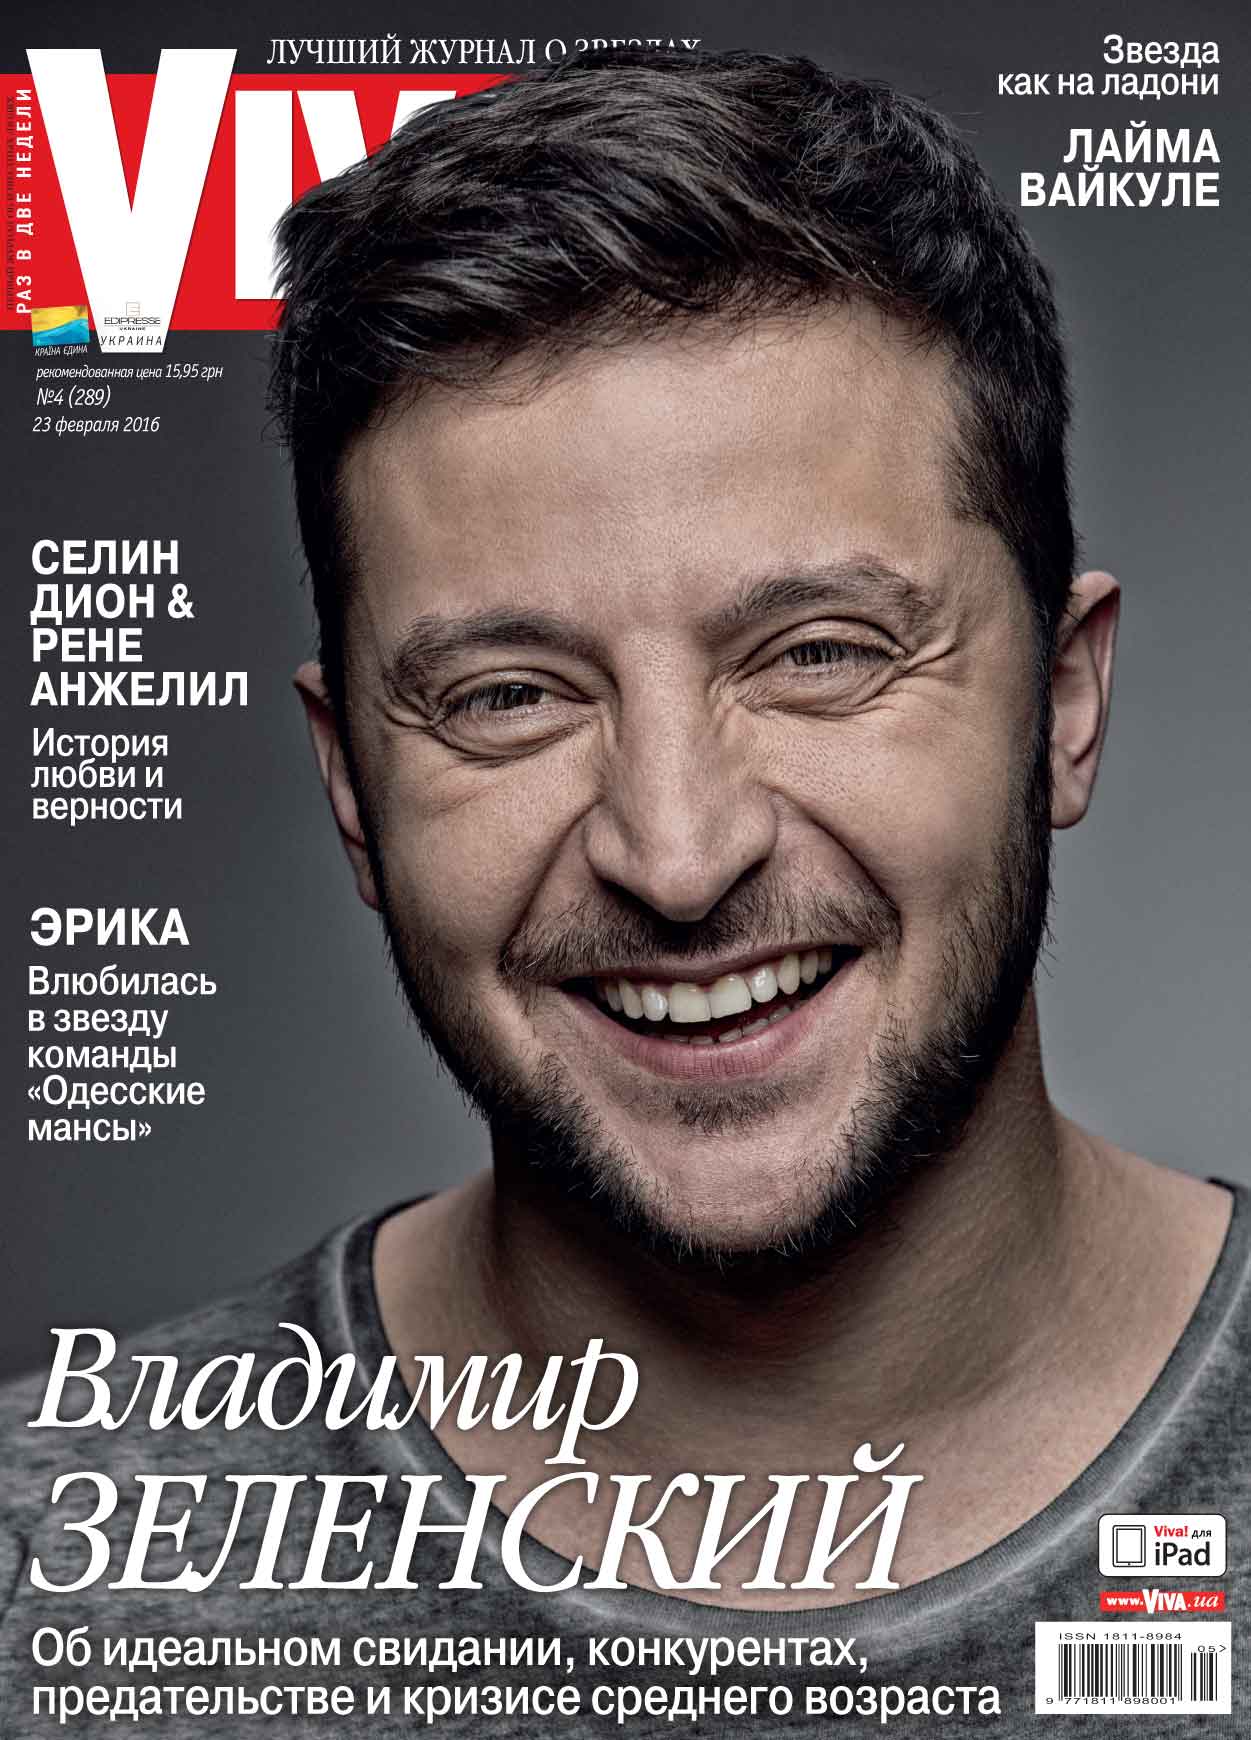 Владимир Зеленский на обложке журнала Viva!